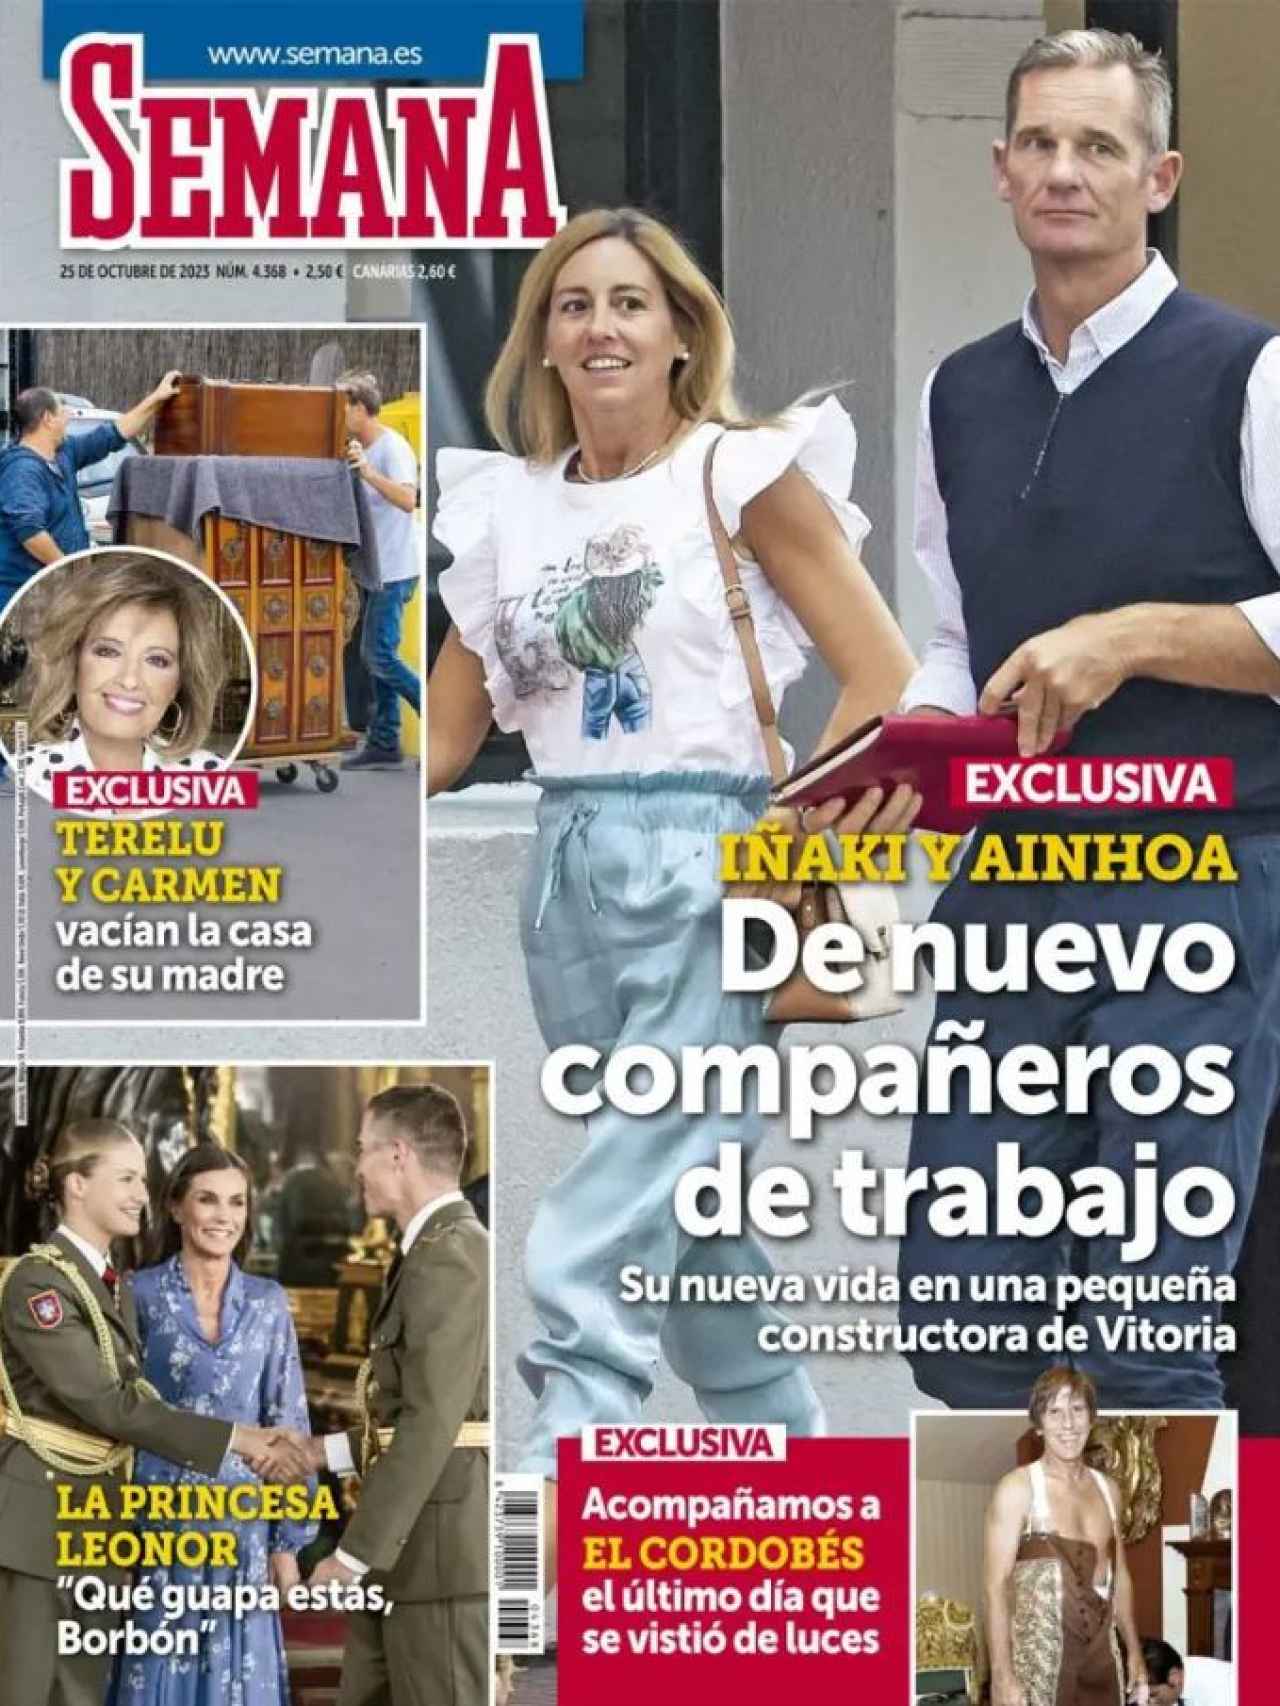 La portada de la revista 'Semana', donde se informa del desalojo de la casa de Campos.